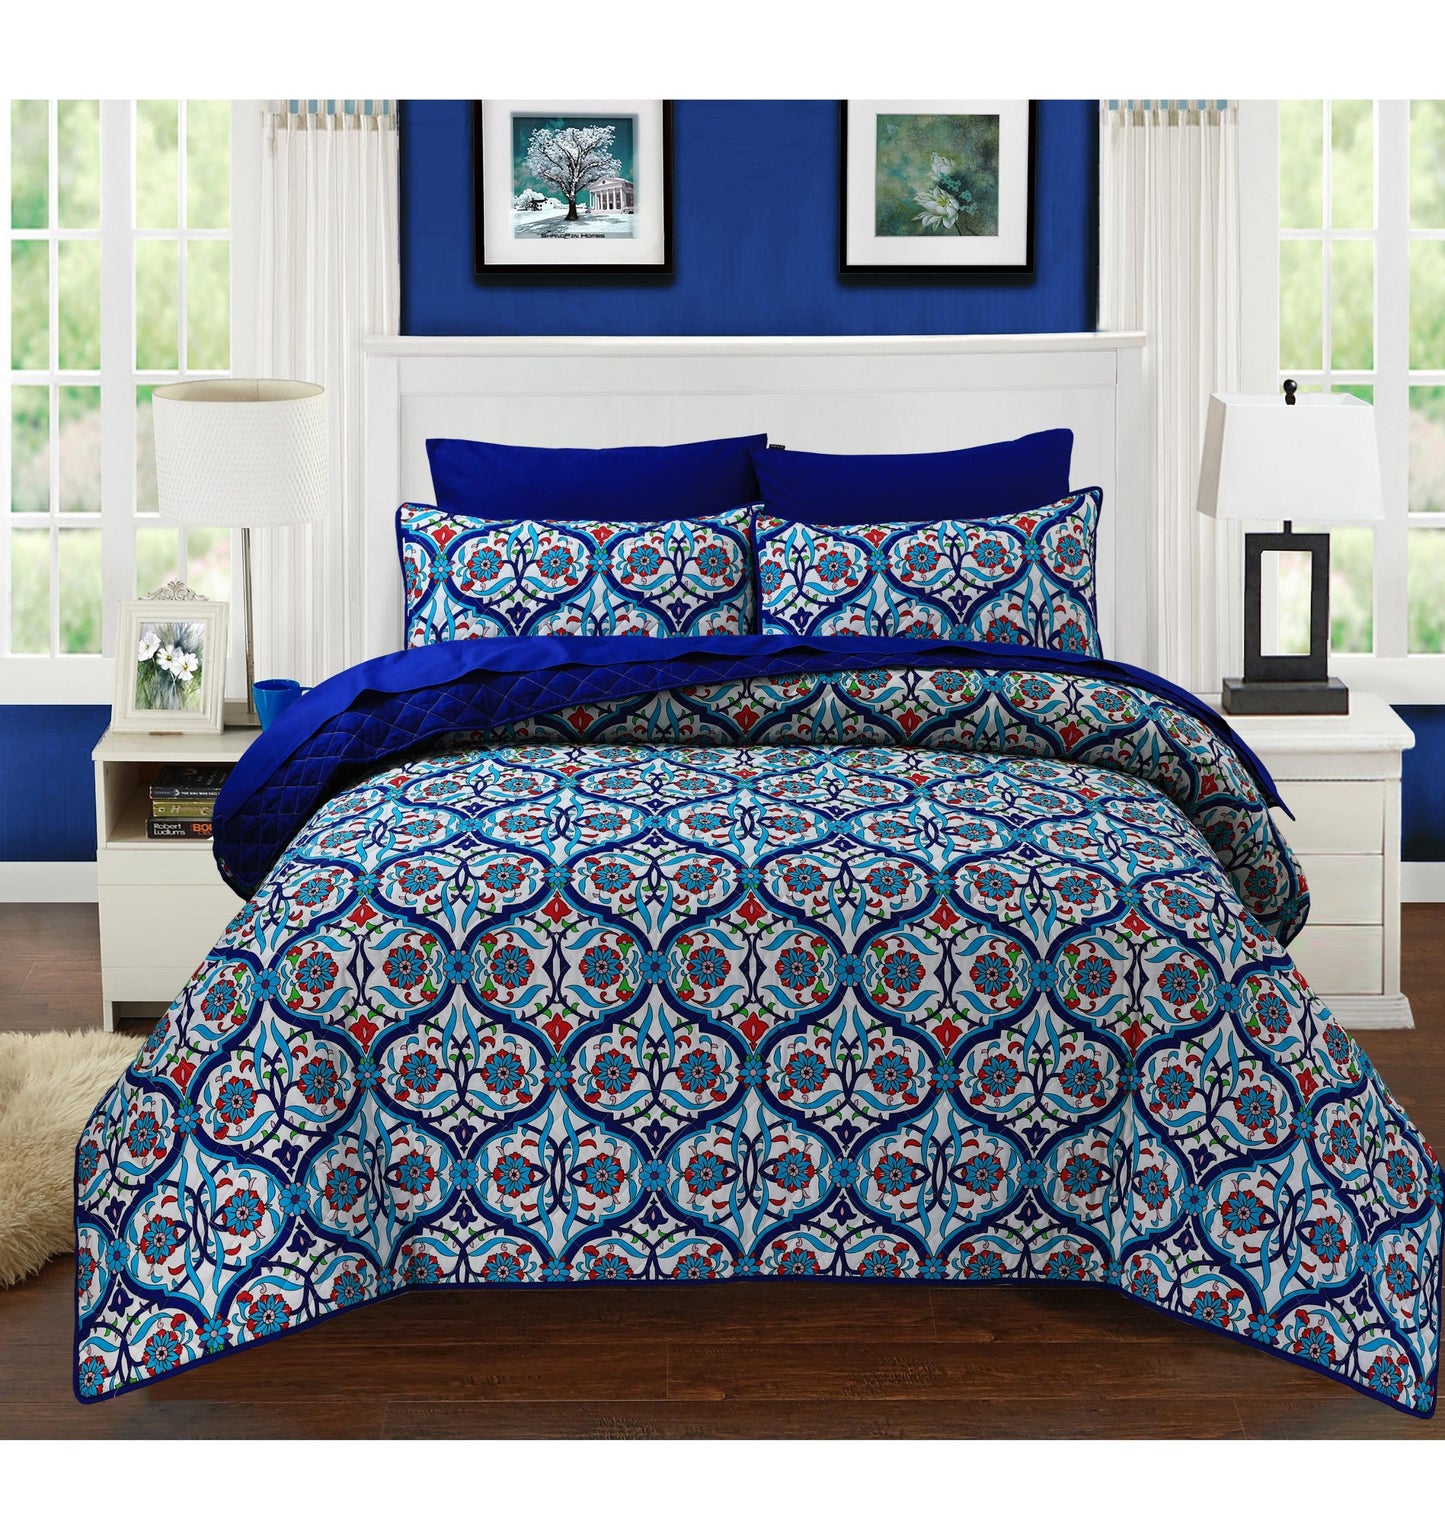 GILGIT BLUE - Bedspread Set